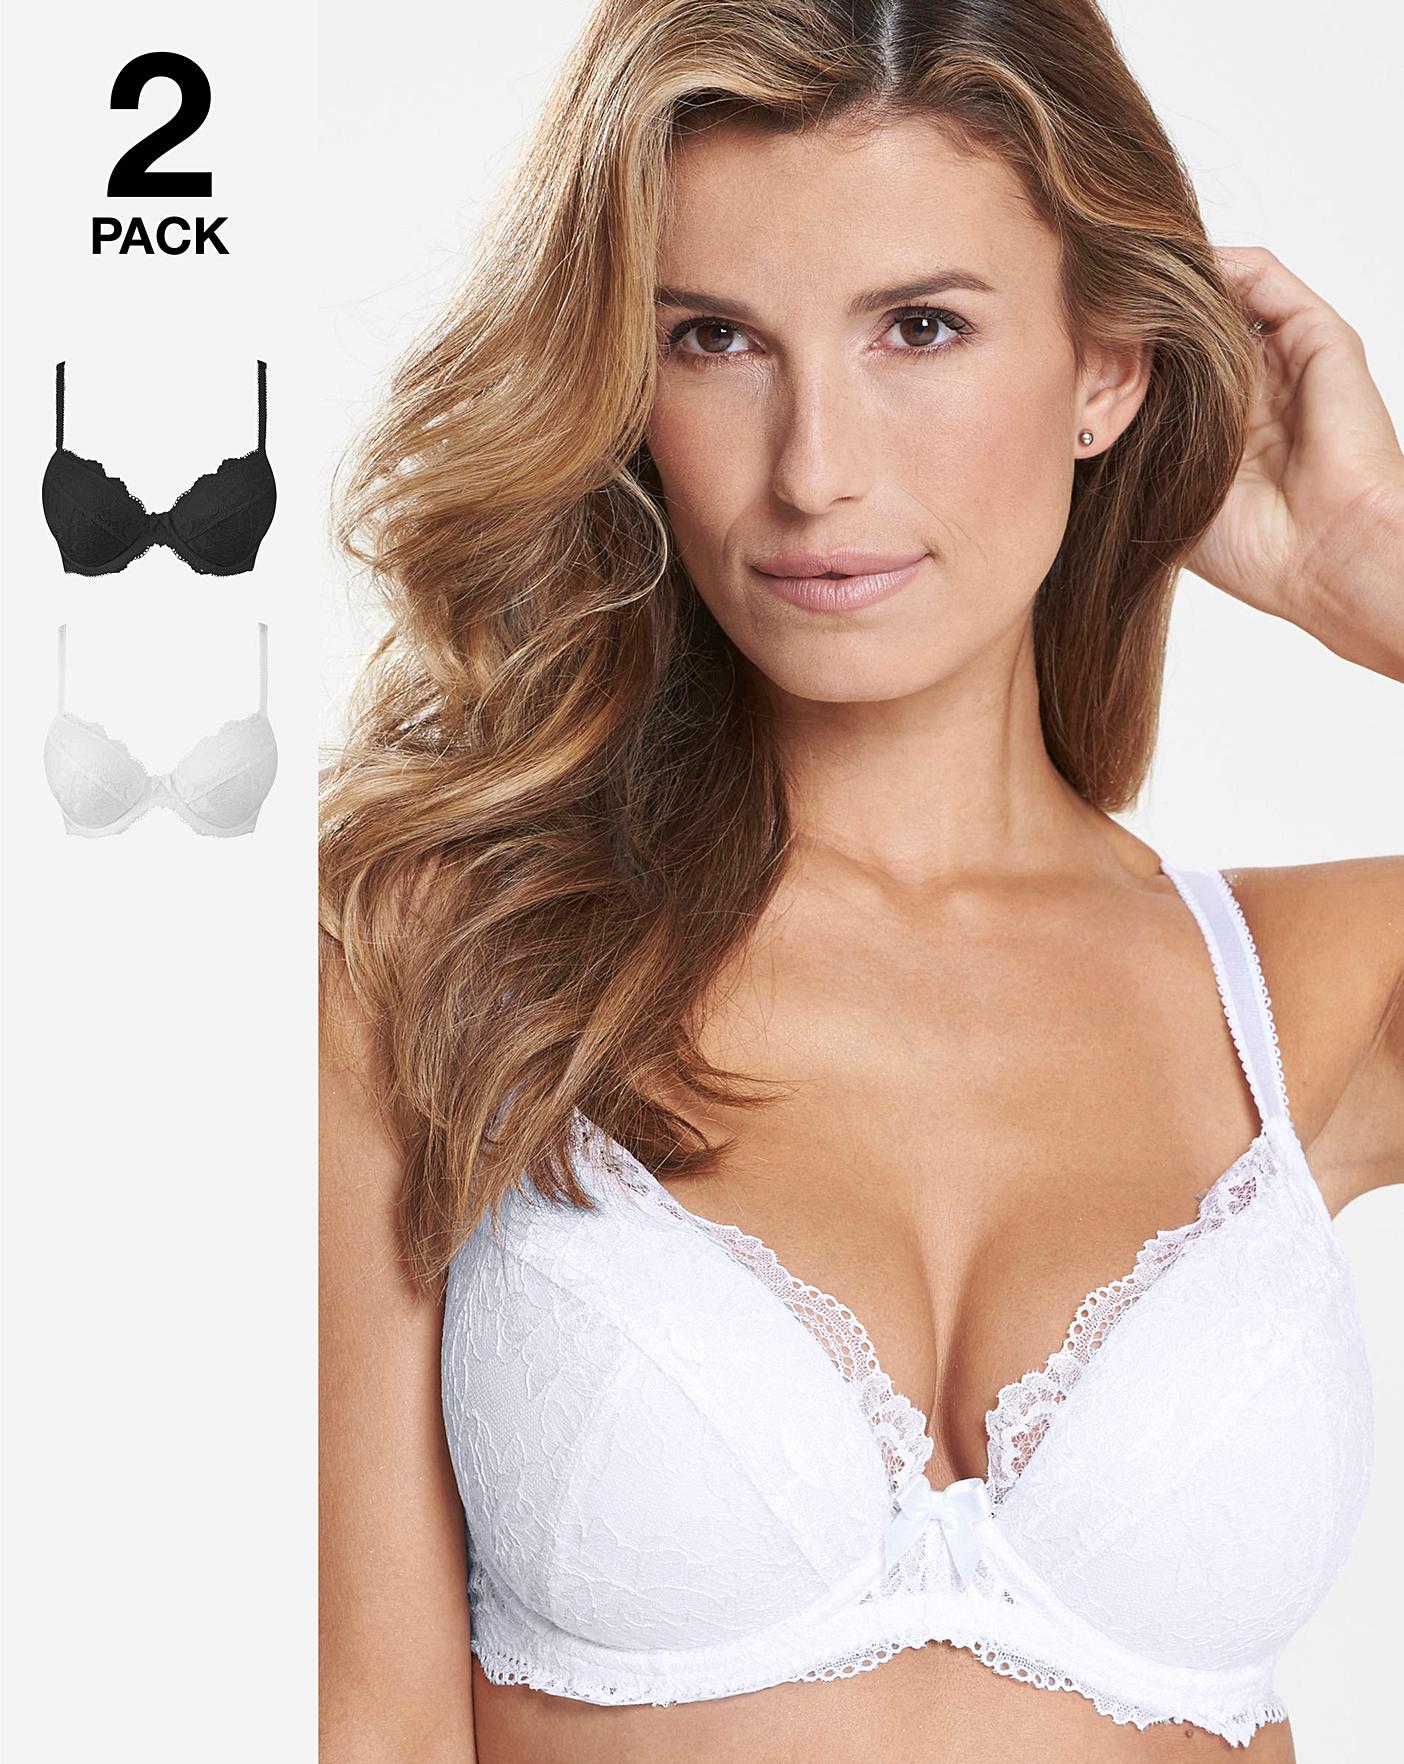 Buy Women's Bras 2 Pack Padded 48 F Lingerie Online